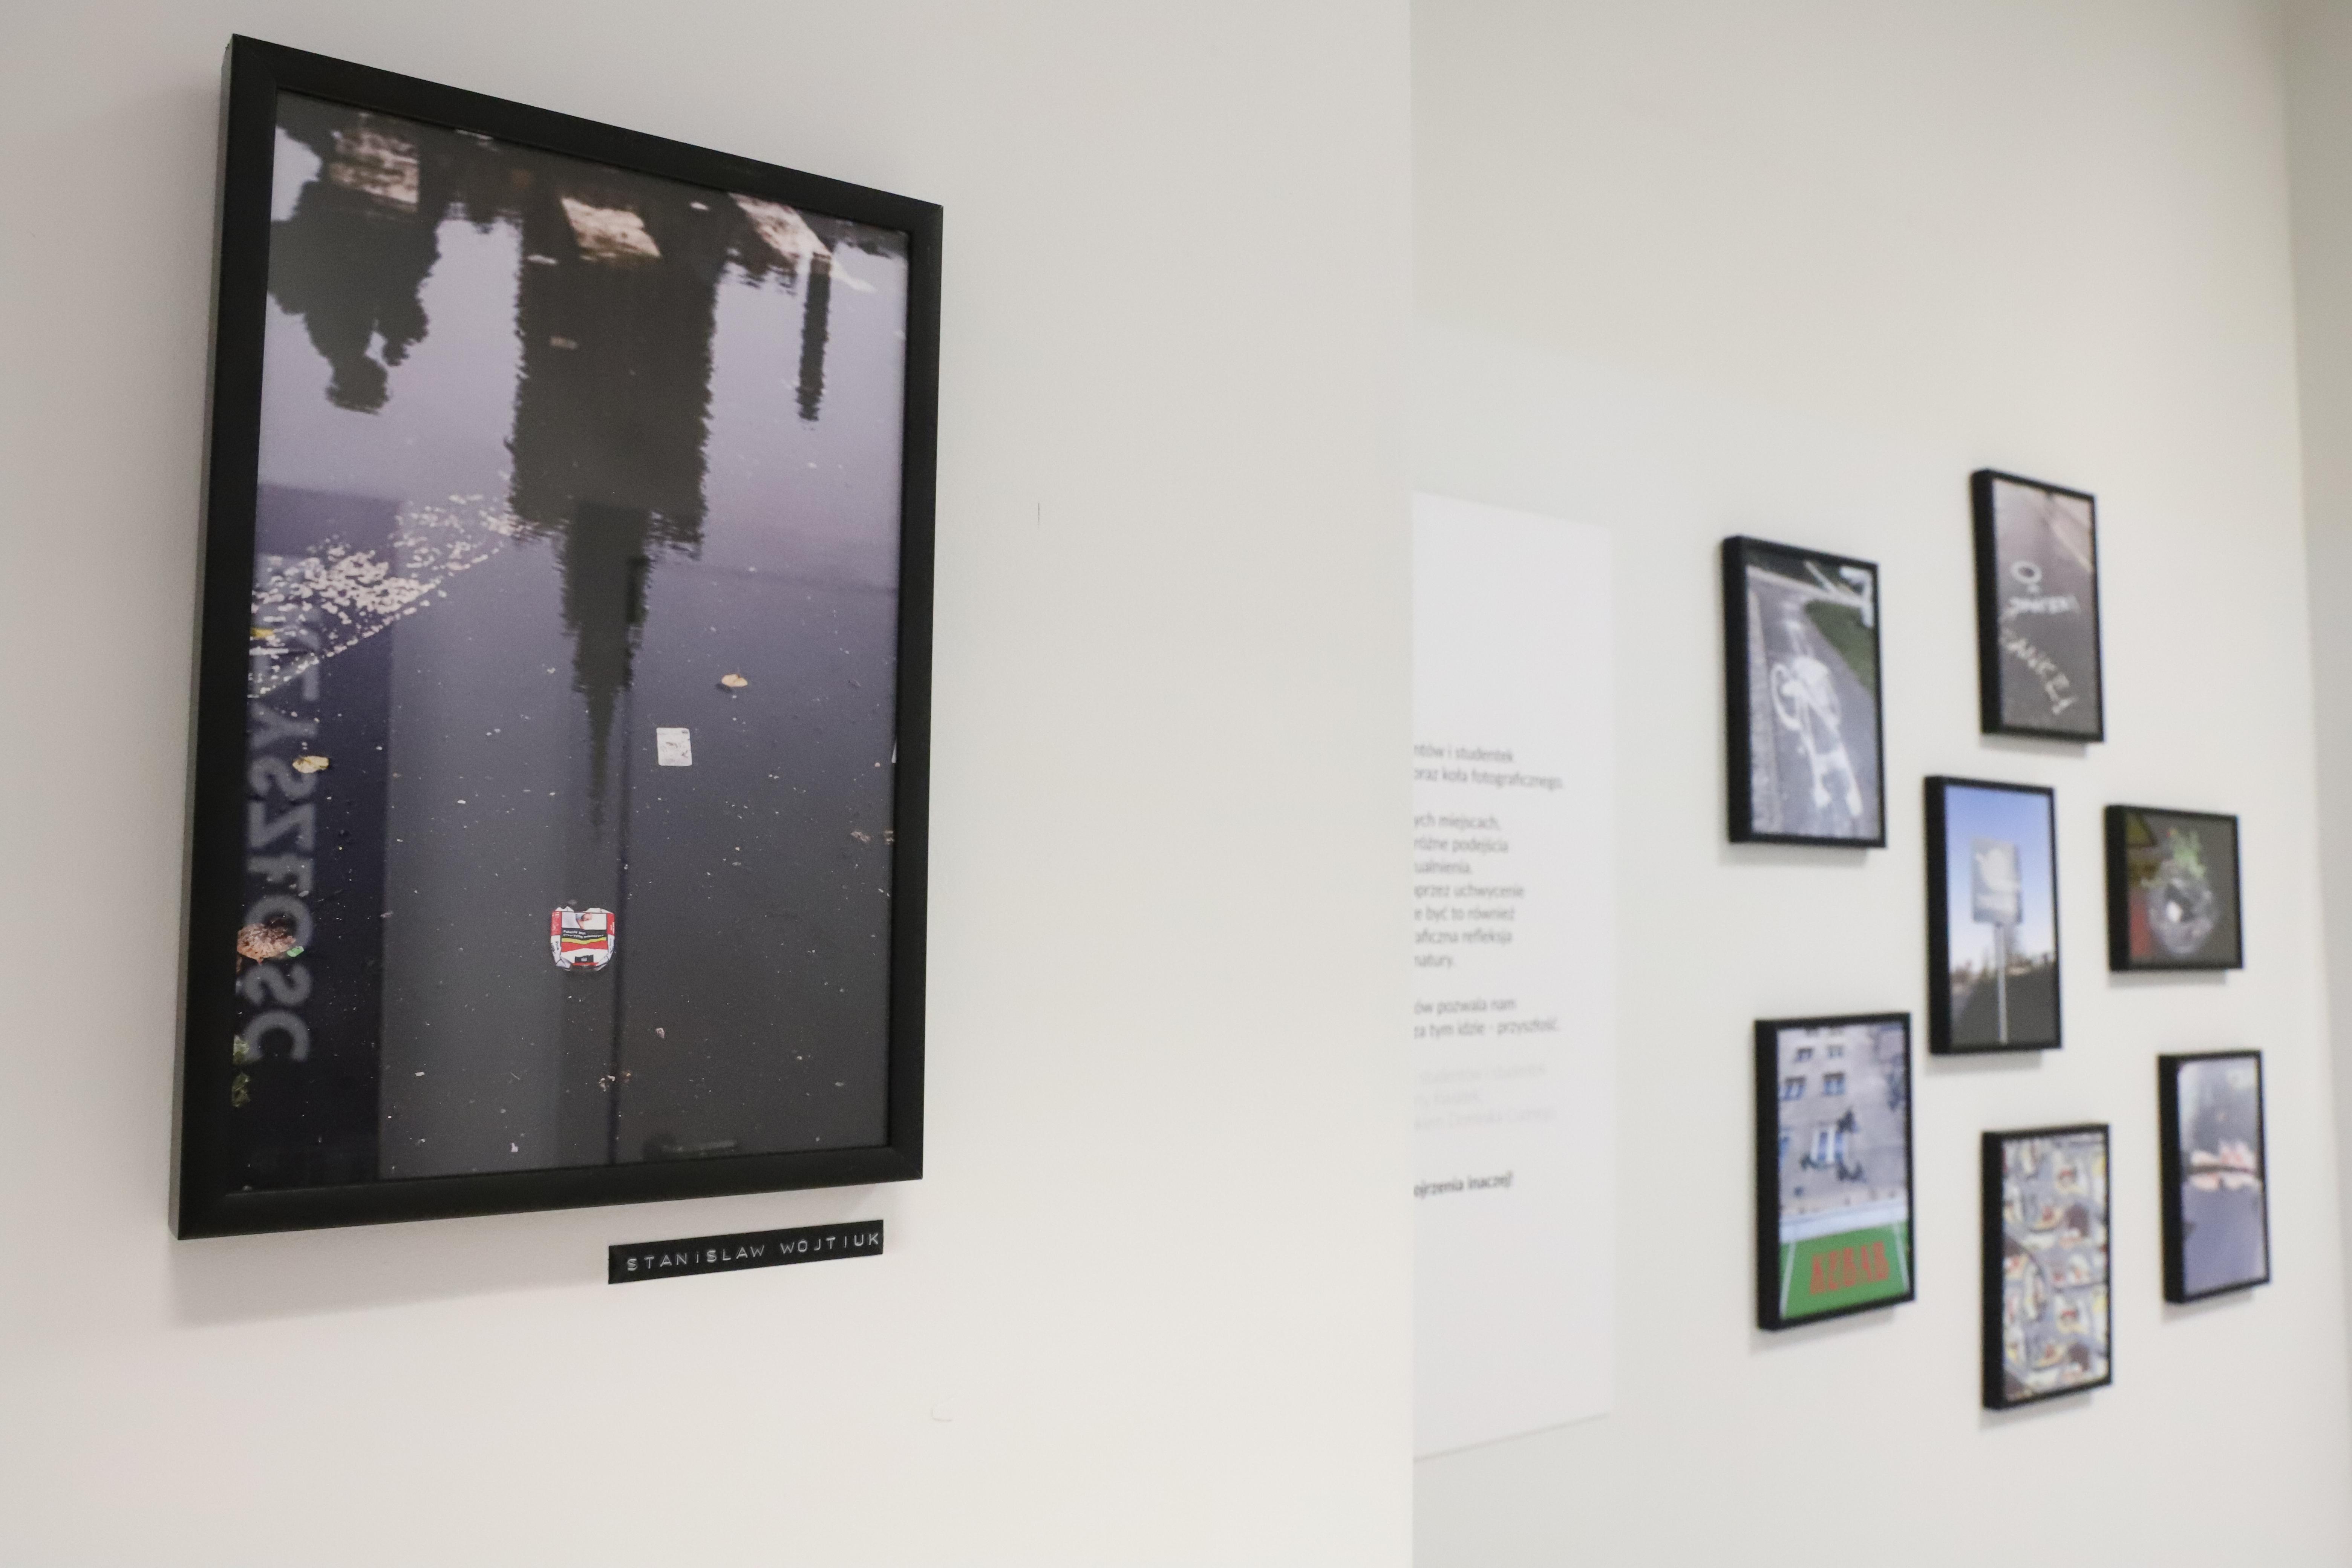 Zdjęcie 7 prac artystów w czarnych ramkach wyeksponowanych na ścianie. Praca na pierwszym planie przedstawia odbicie pałacu kultury na mokrym od deszczu chodniku.